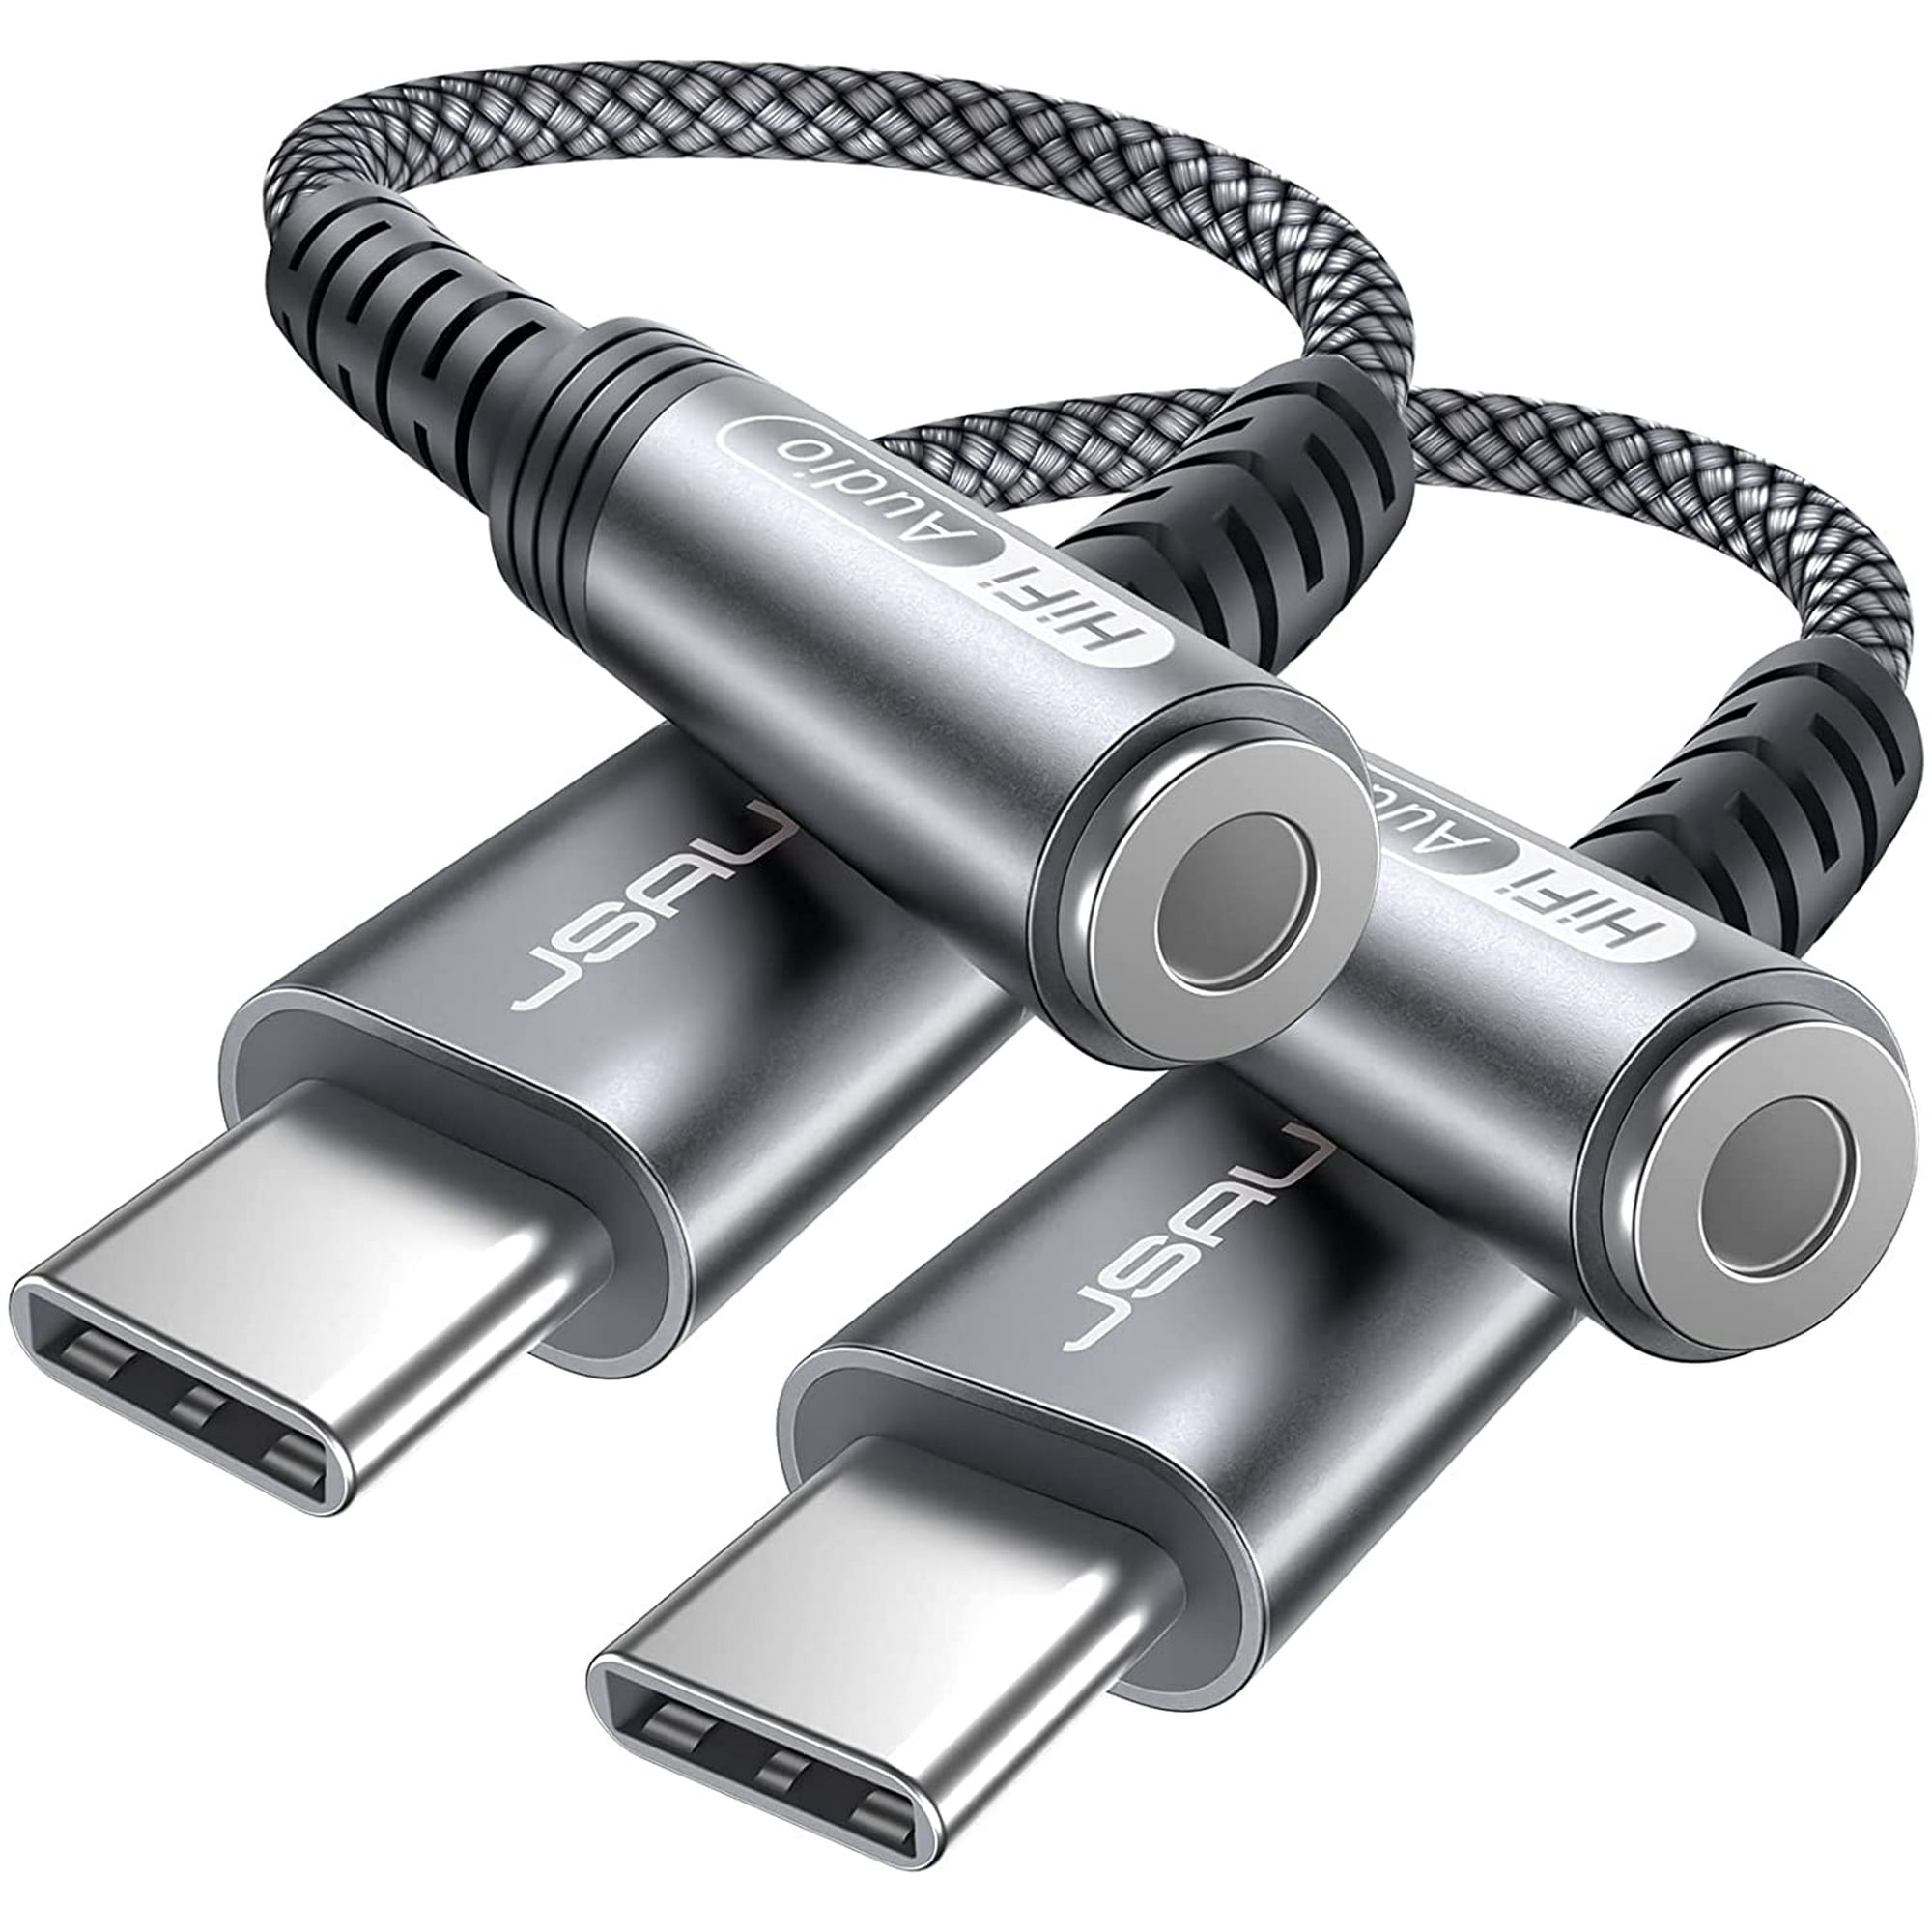 Ripley - JSAUX - ADAPTADOR USB TIPO C A CONECTOR DE AURICULARES